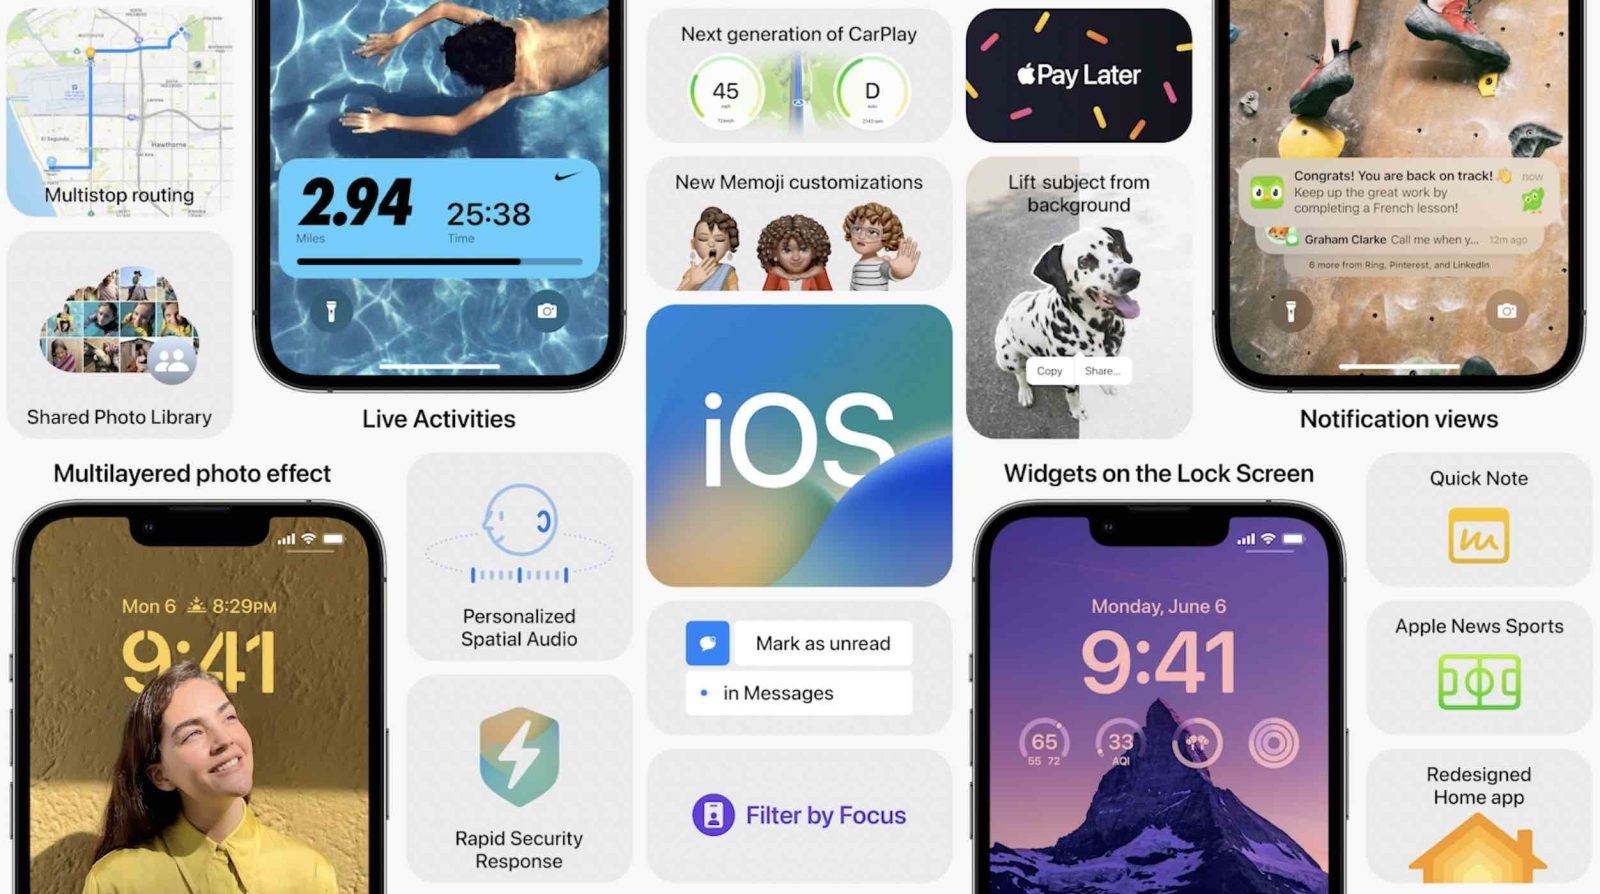 هر آنچه باید درباره iOS 16 بدانید